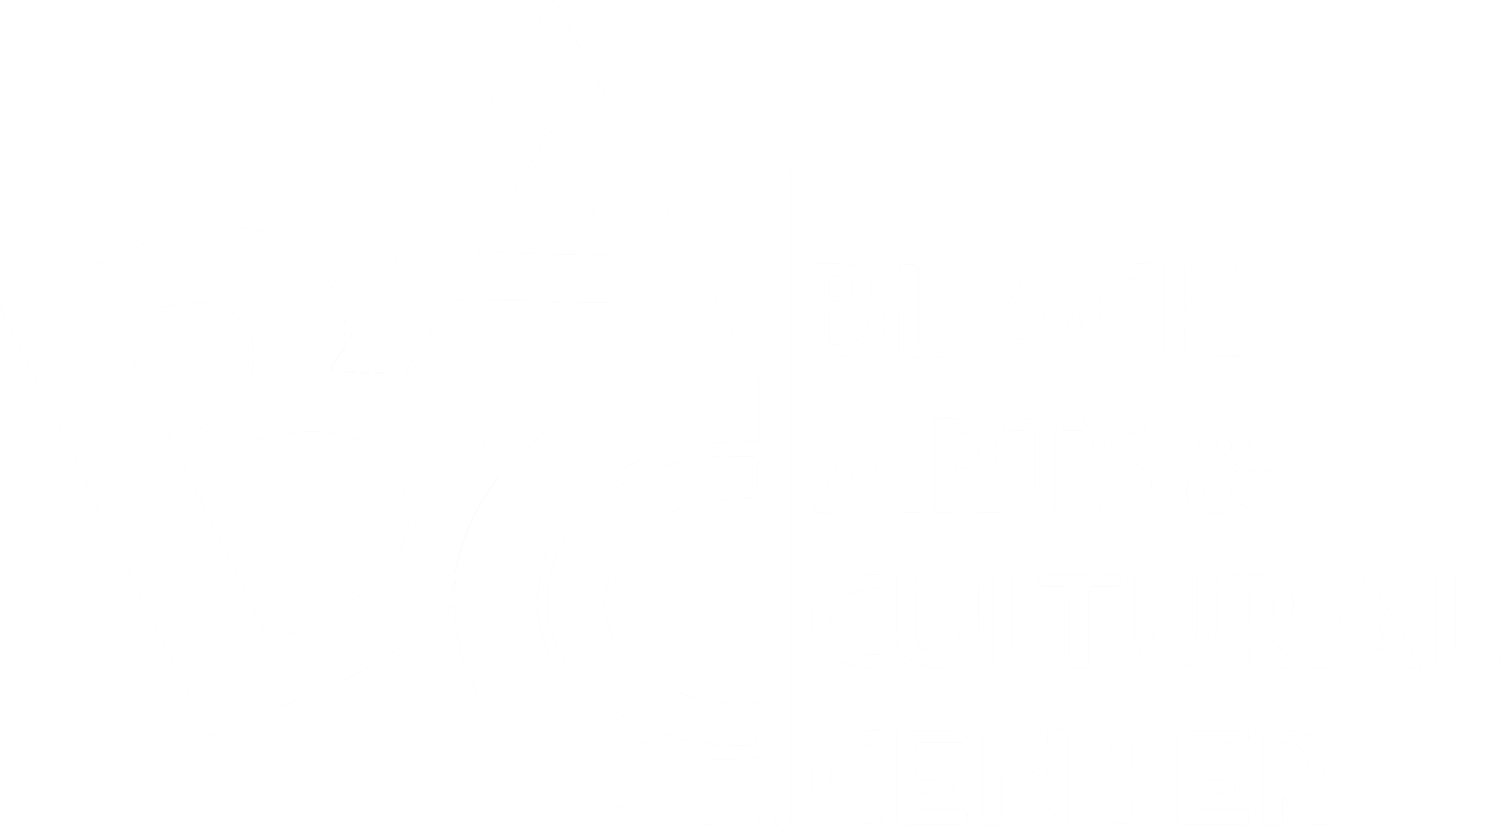 Black Arts & Cultural Center